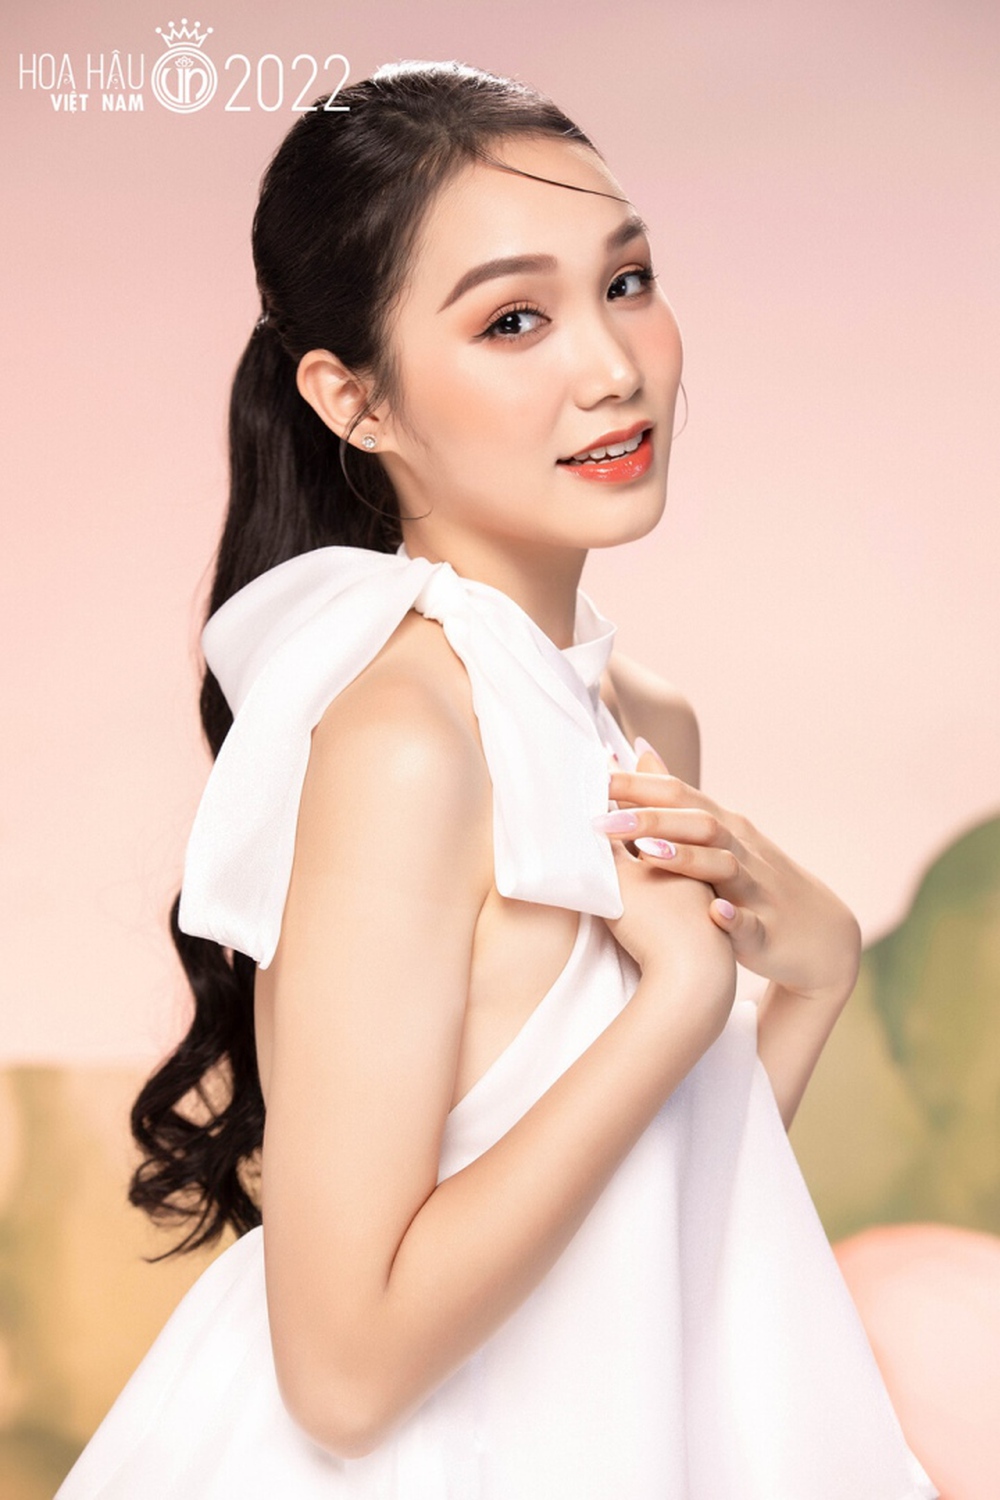 Ảnh chân dung trong veo, ngọt ngào của dàn thí sinh Hoa hậu Việt Nam 2022 - Ảnh 8.